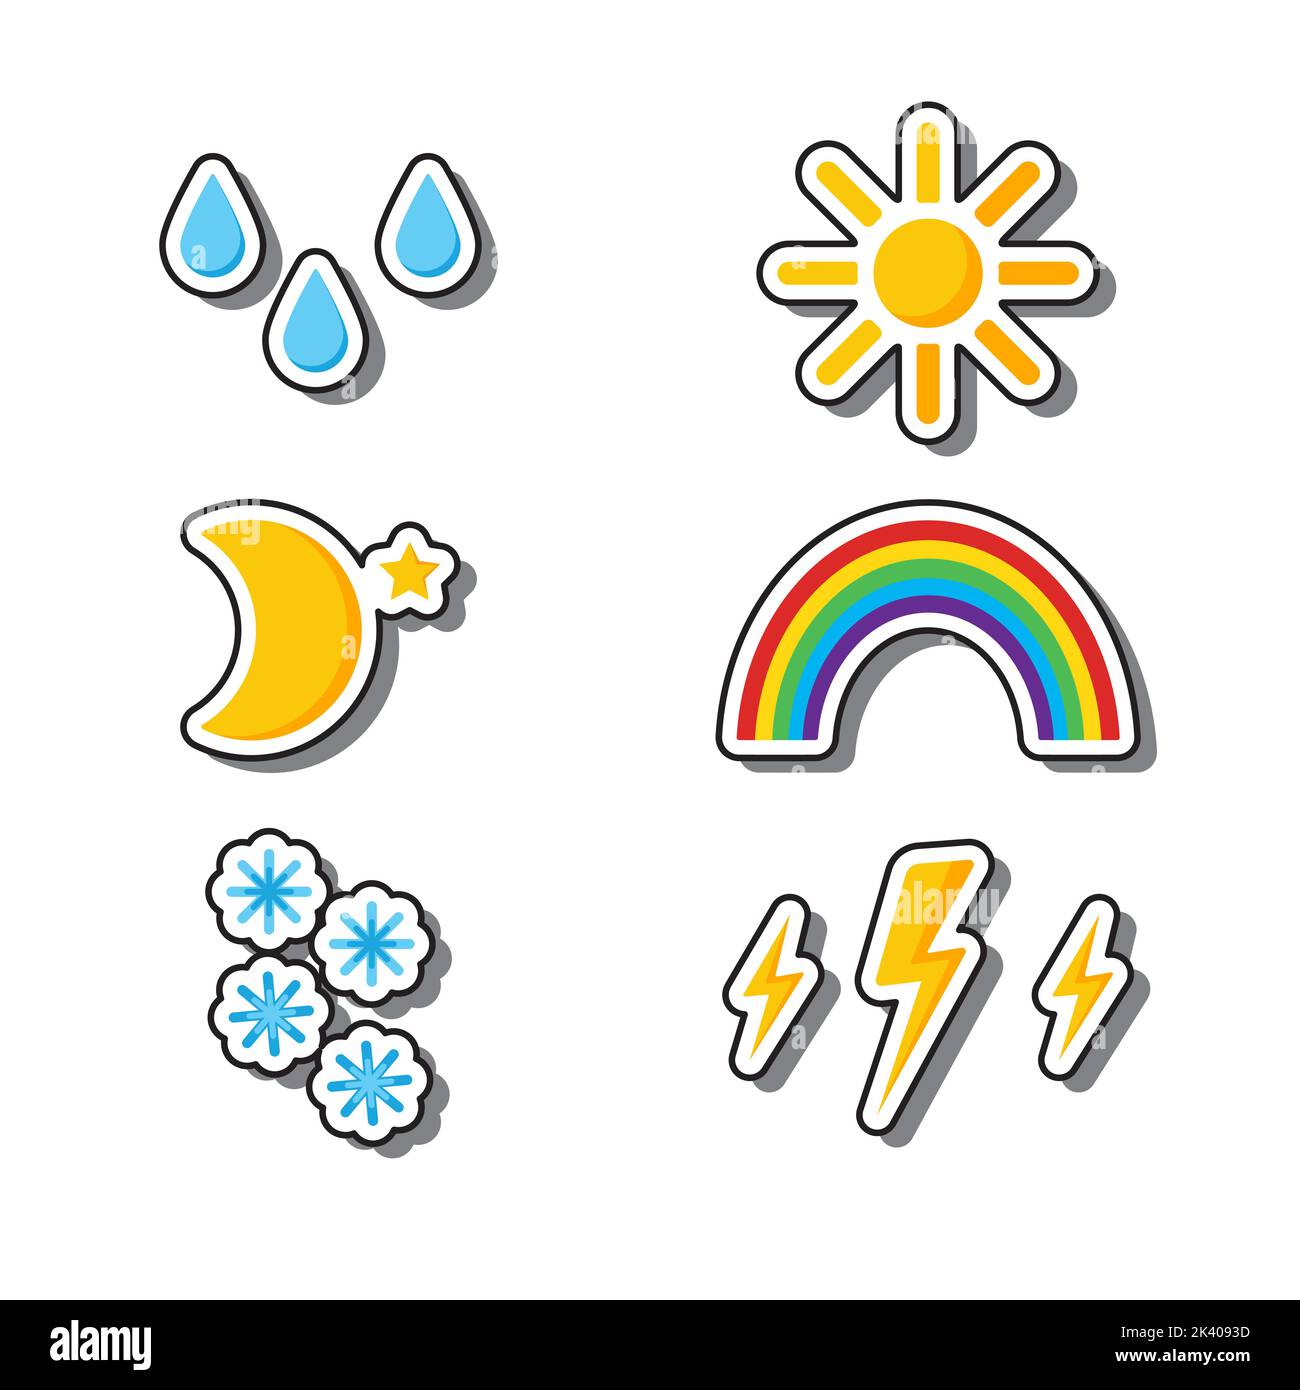 Set di adesivi per le previsioni meteo. Immagini vettoriali, su sfondo scuro, nuvole, nuvole, arcobaleni, sole, stelle, fulmini, luna, neve e pioggia. Illustrazione Vettoriale